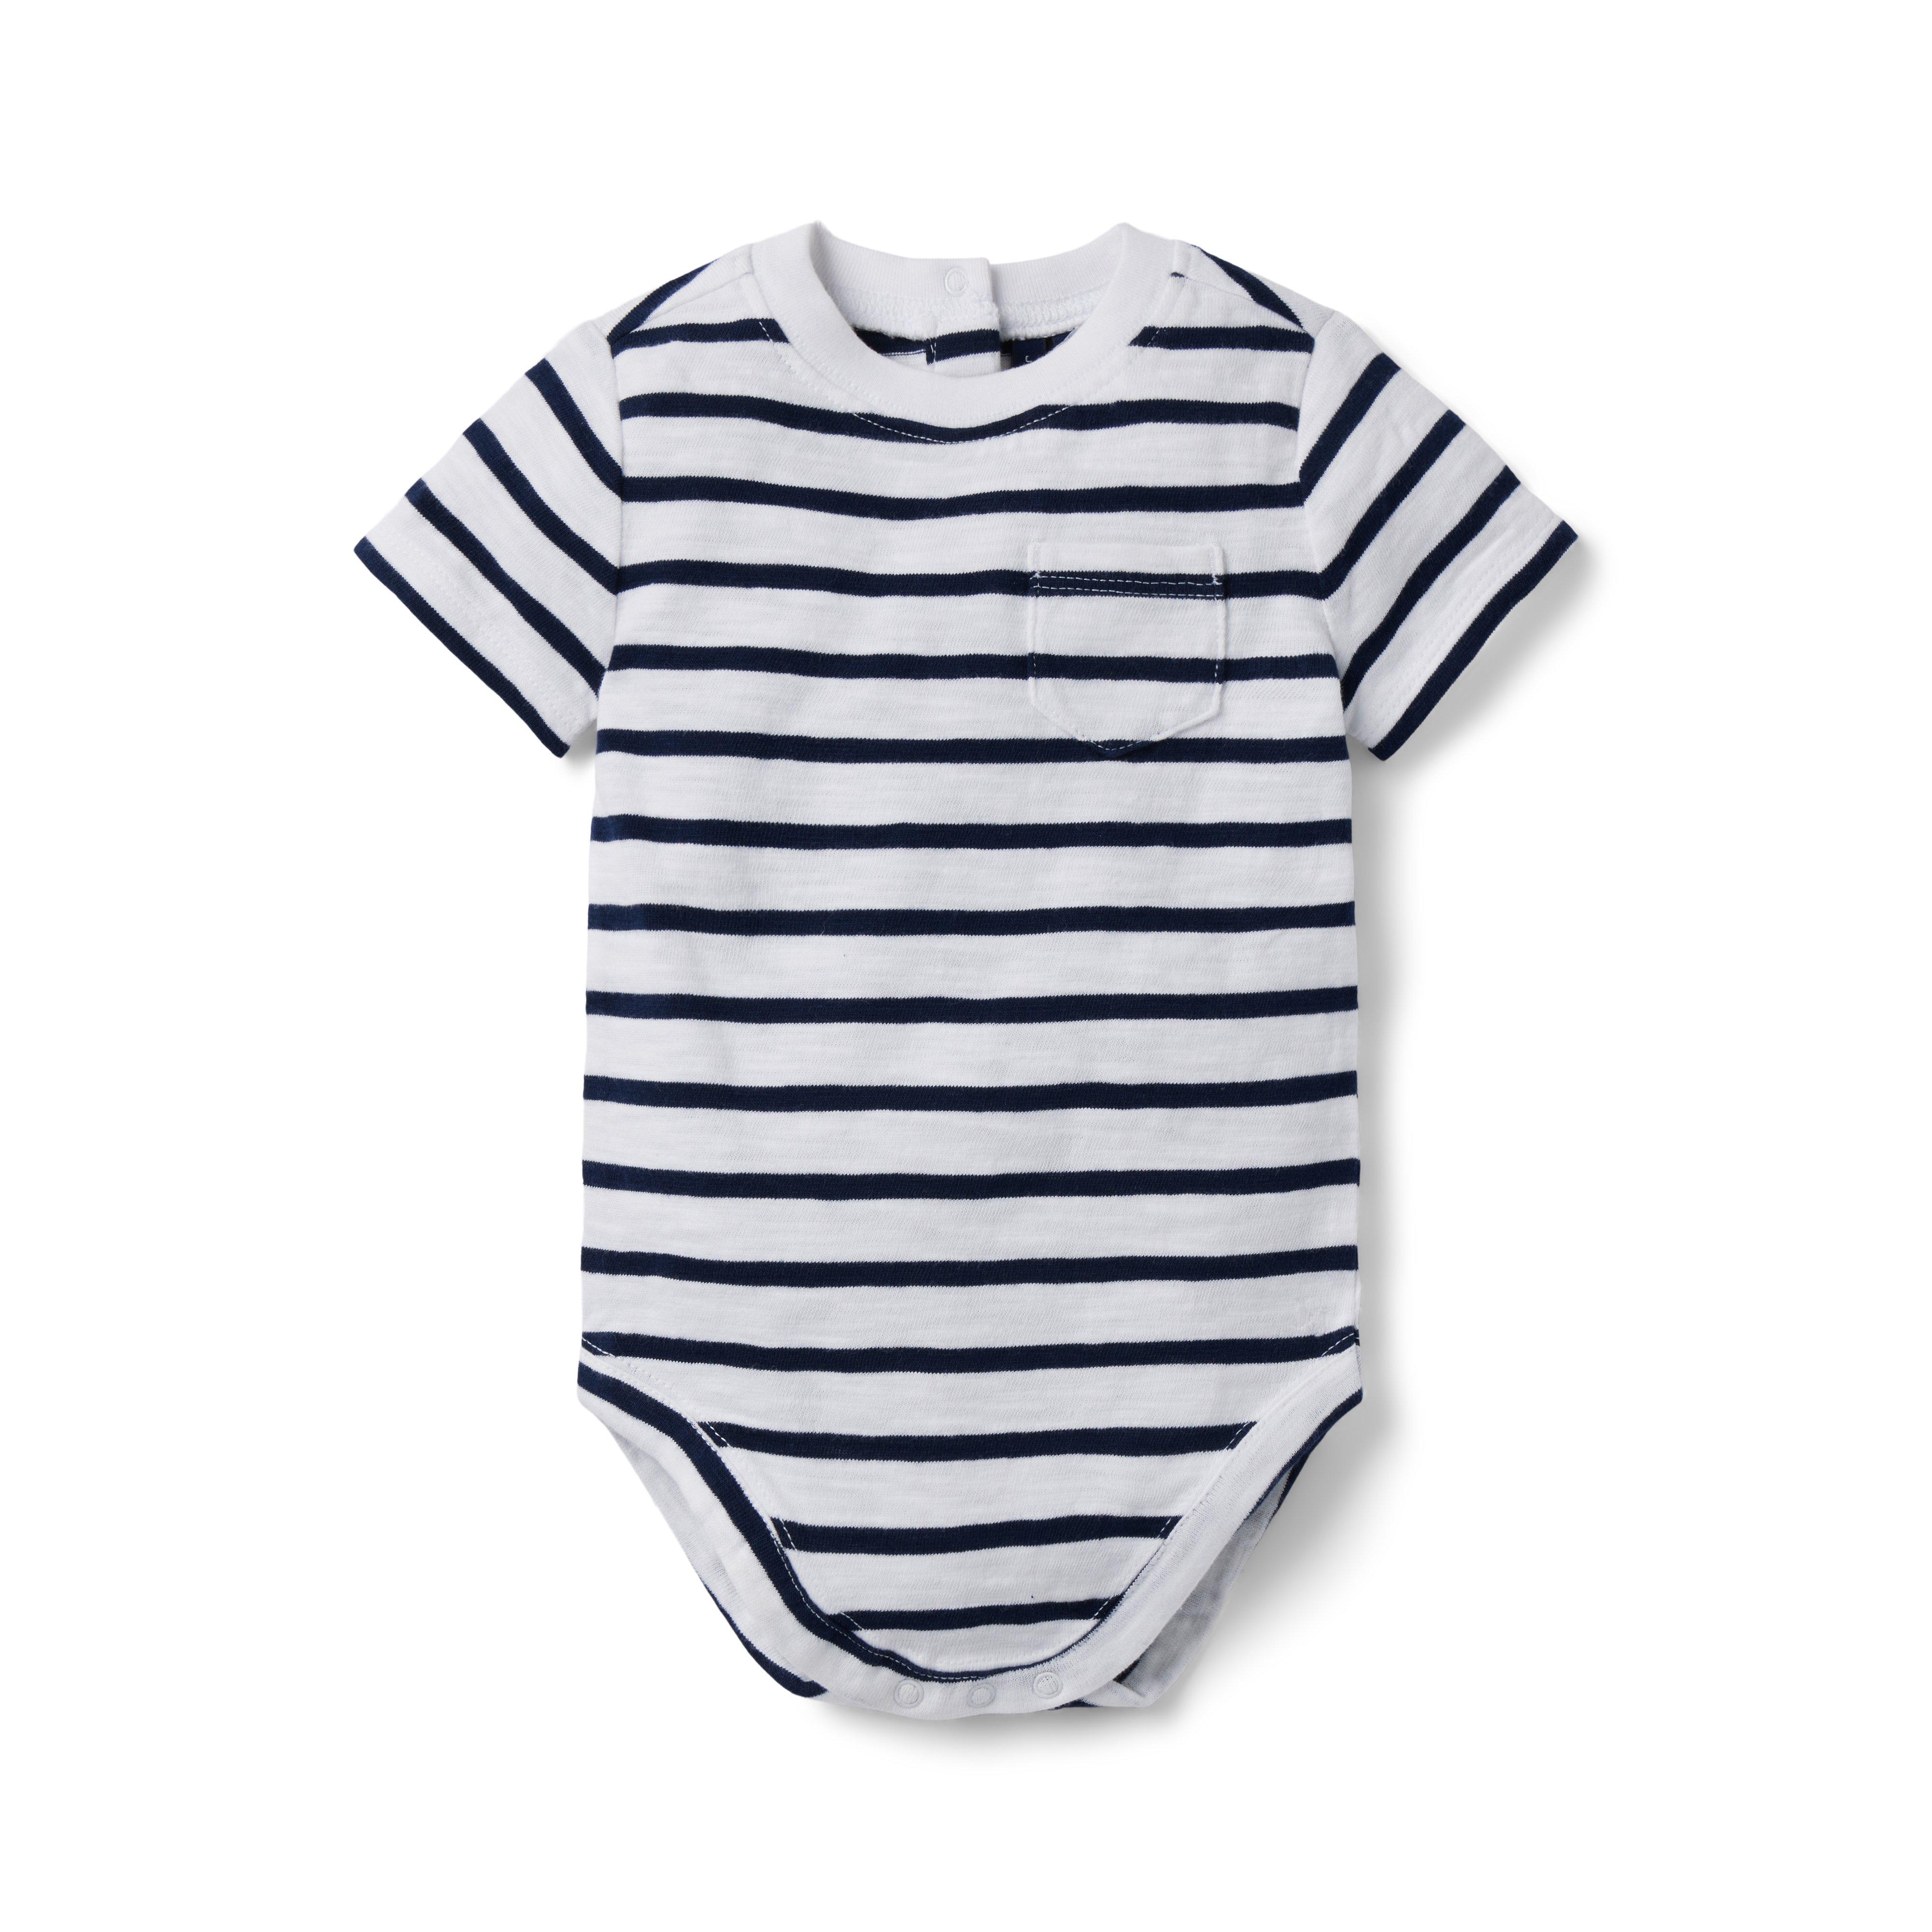 Newborn Merchant Marine Stripe Baby Striped Slub Bodysuit by Janie and Jack